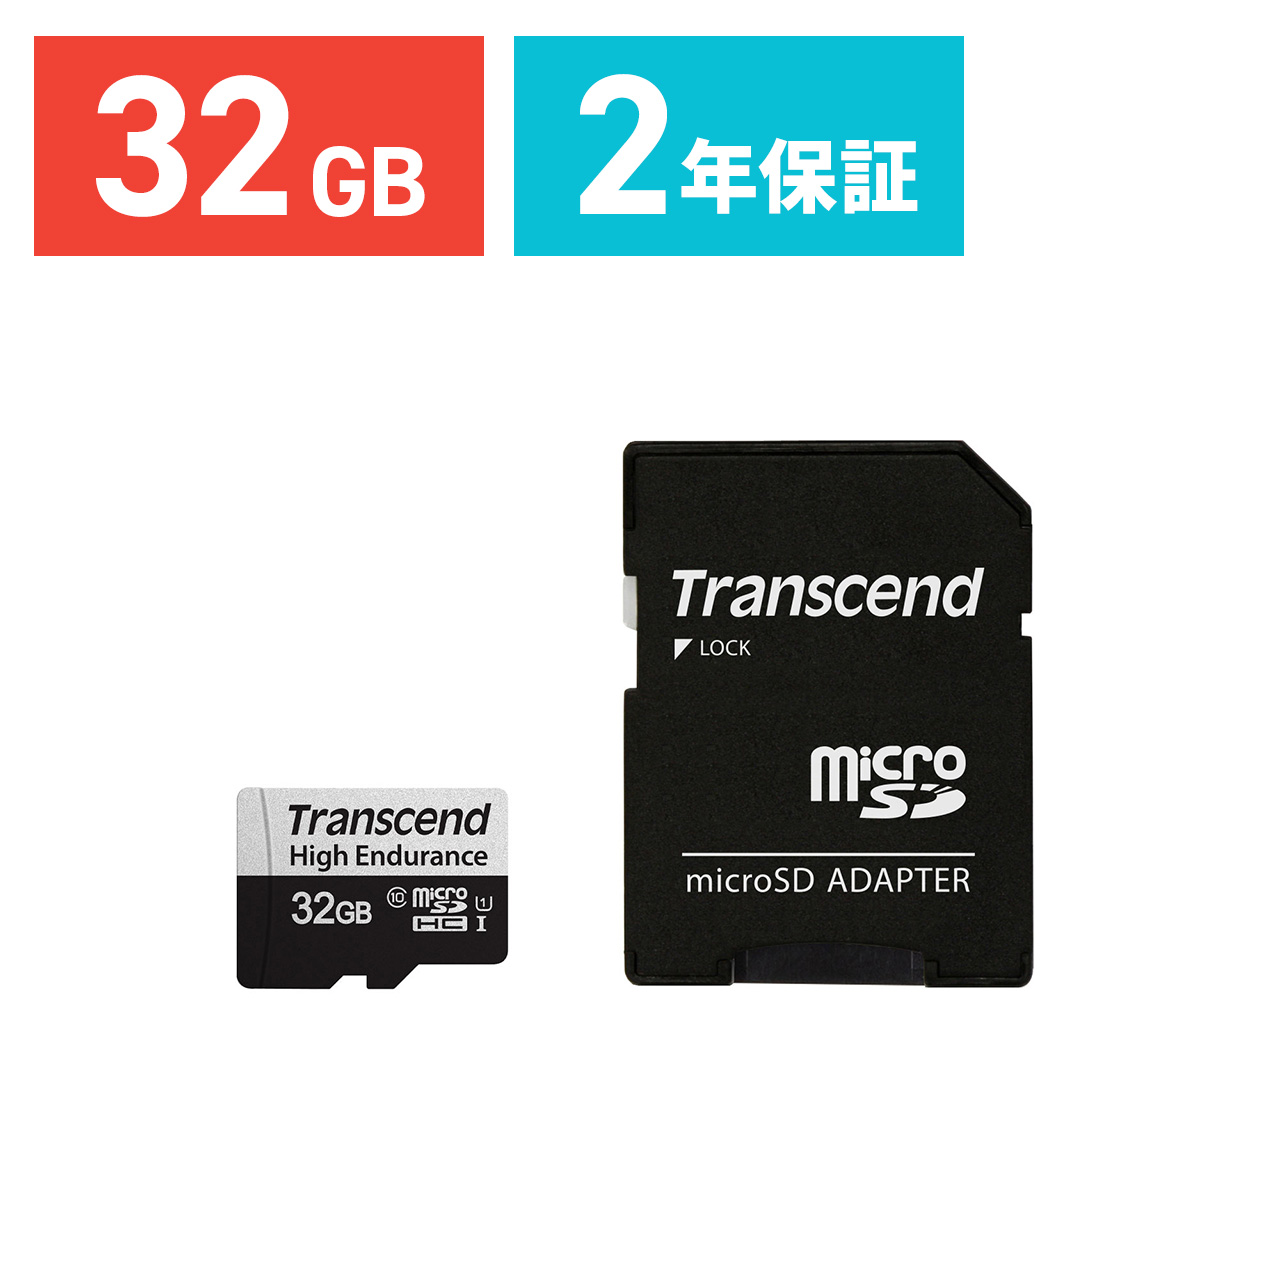 Transcend microSDHCカード 32GB Class10 UHS-I U1 高耐久 ドライブレコーダー 防犯カメラ SDカード変換アダプタ付 トランセンド TS32GUSD350V マイクロSD